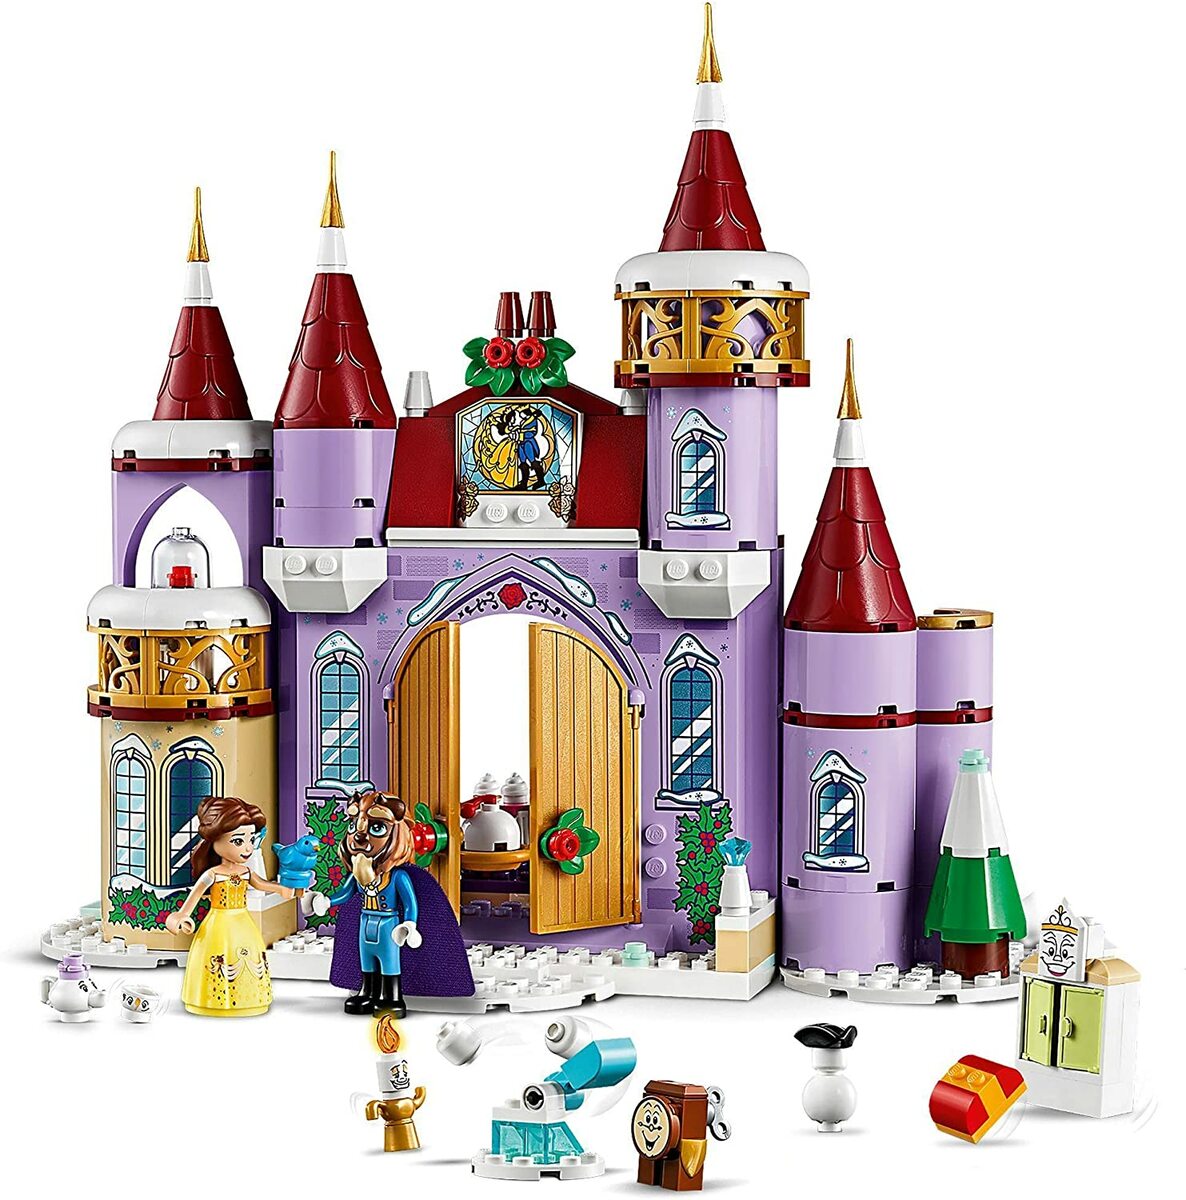 予約 美女と野獣が大好きな小さなお子さまに Lego レゴ ディズニープリンセス ベルのお城のウィンターパーティー 4歳以上 Disney ブロック おもちゃ 知育玩具 レゴジャパン 女の子 男の子 E Uds Co Jp